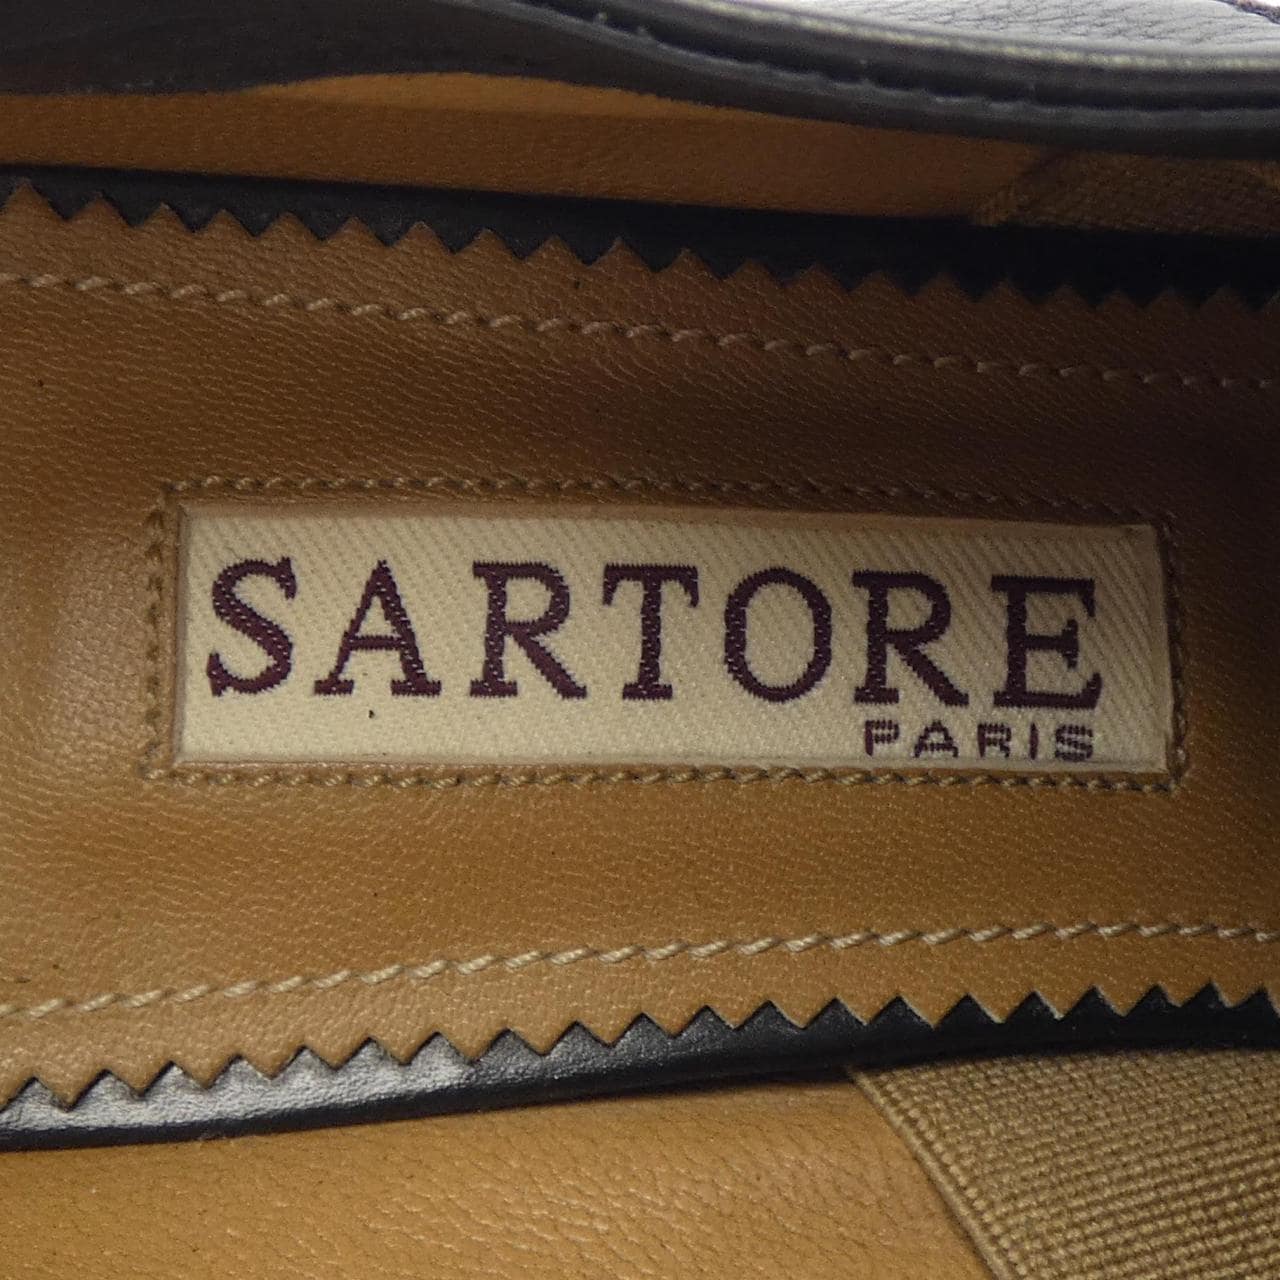 Sartre SARTORE shoes